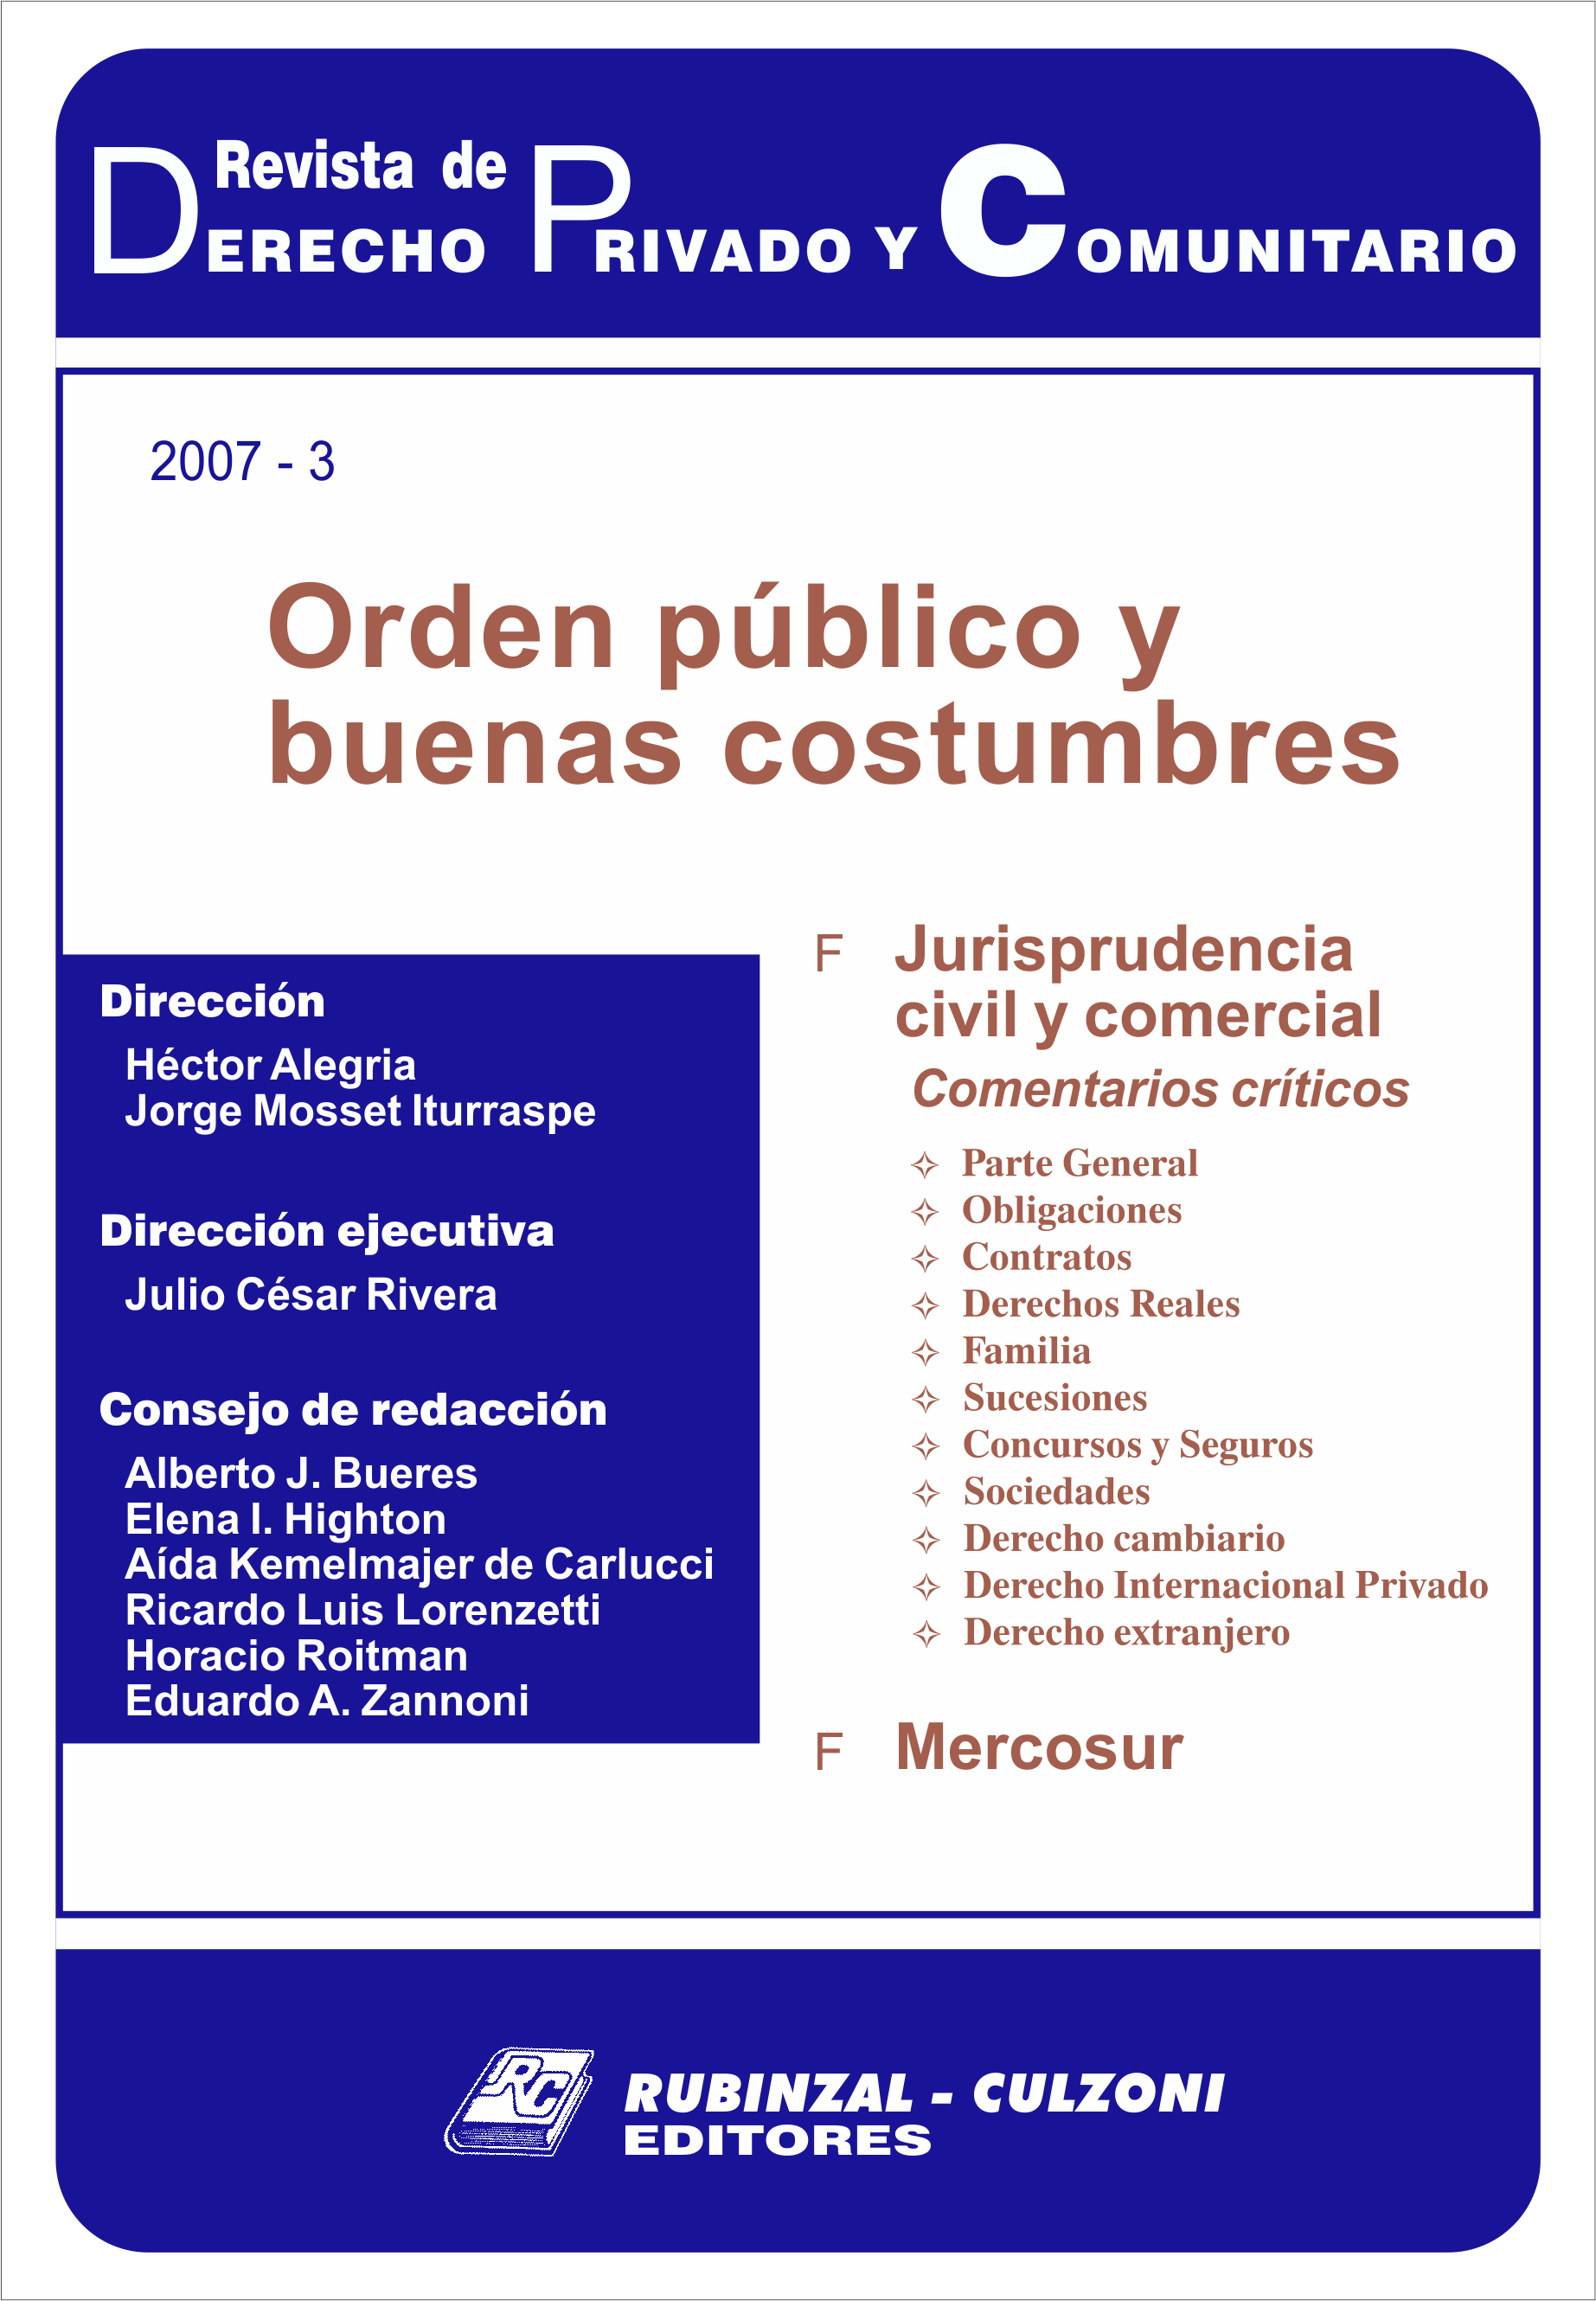 Revista de Derecho Privado y Comunitario - Orden público y buenas costumbres